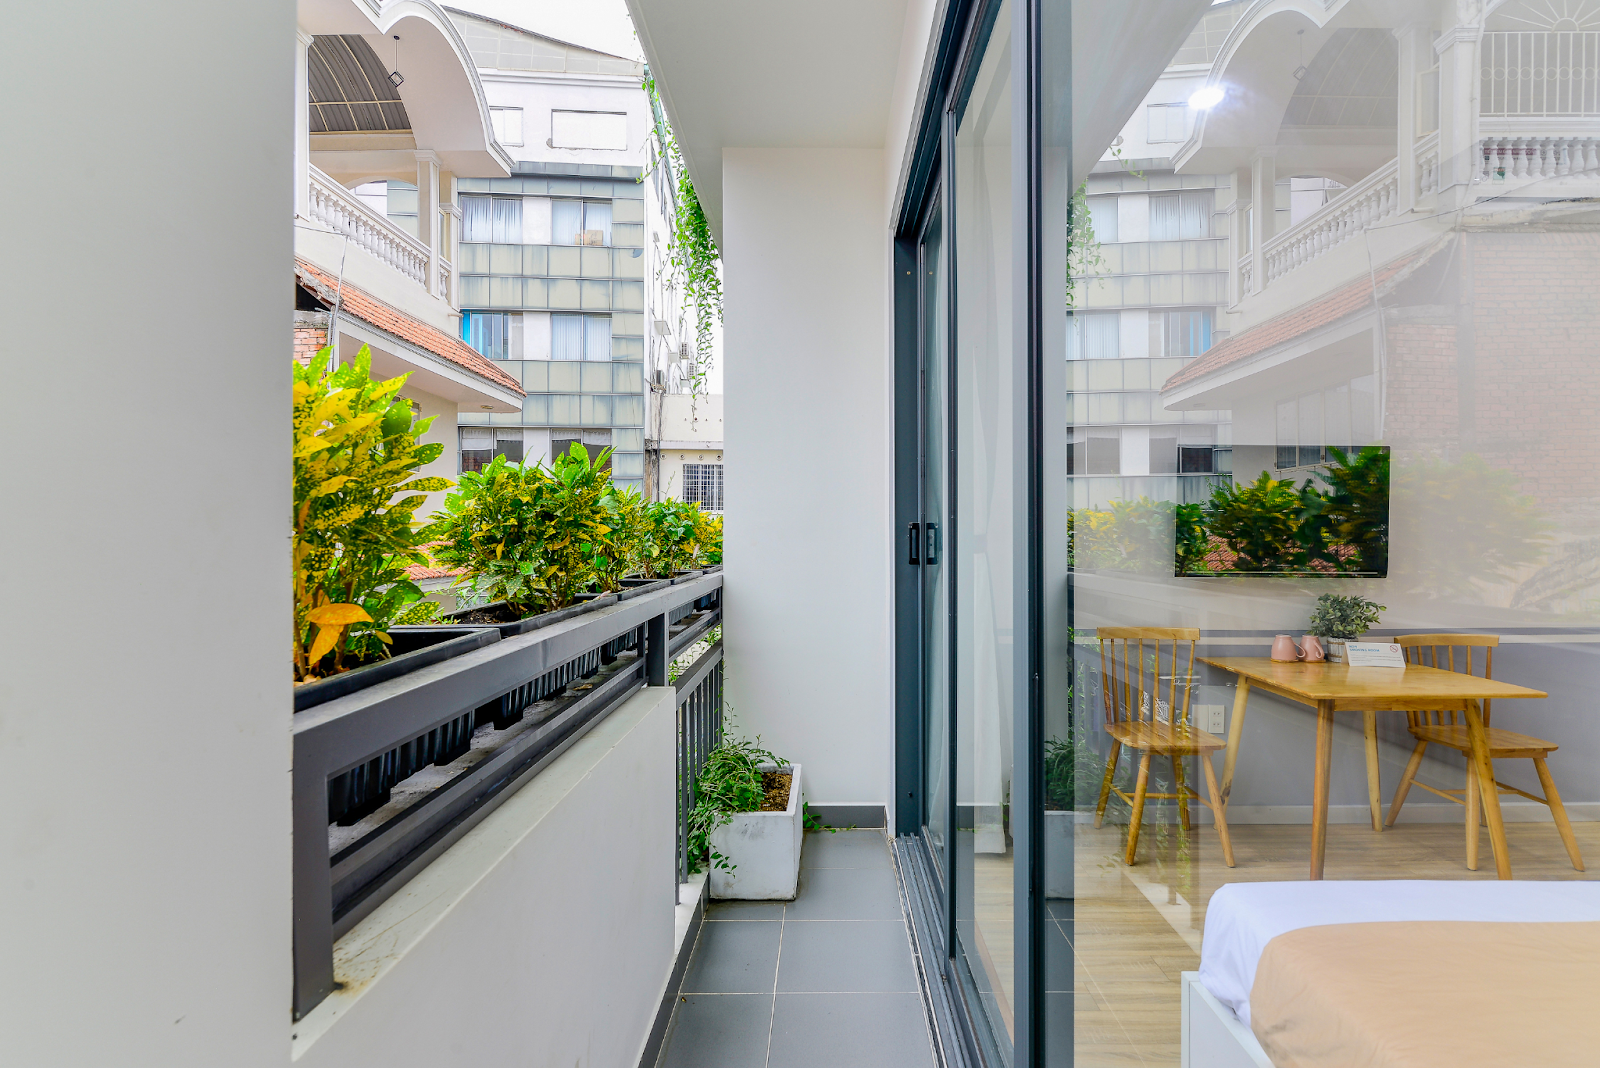 Mẫu 5: Kiểu dáng ban công chung cư hiện đại nhỏ, hẹp với sự kết hợp thêm của các chậu cây đa năng để tạo thêm không gian xanh cho ngôi nhà.